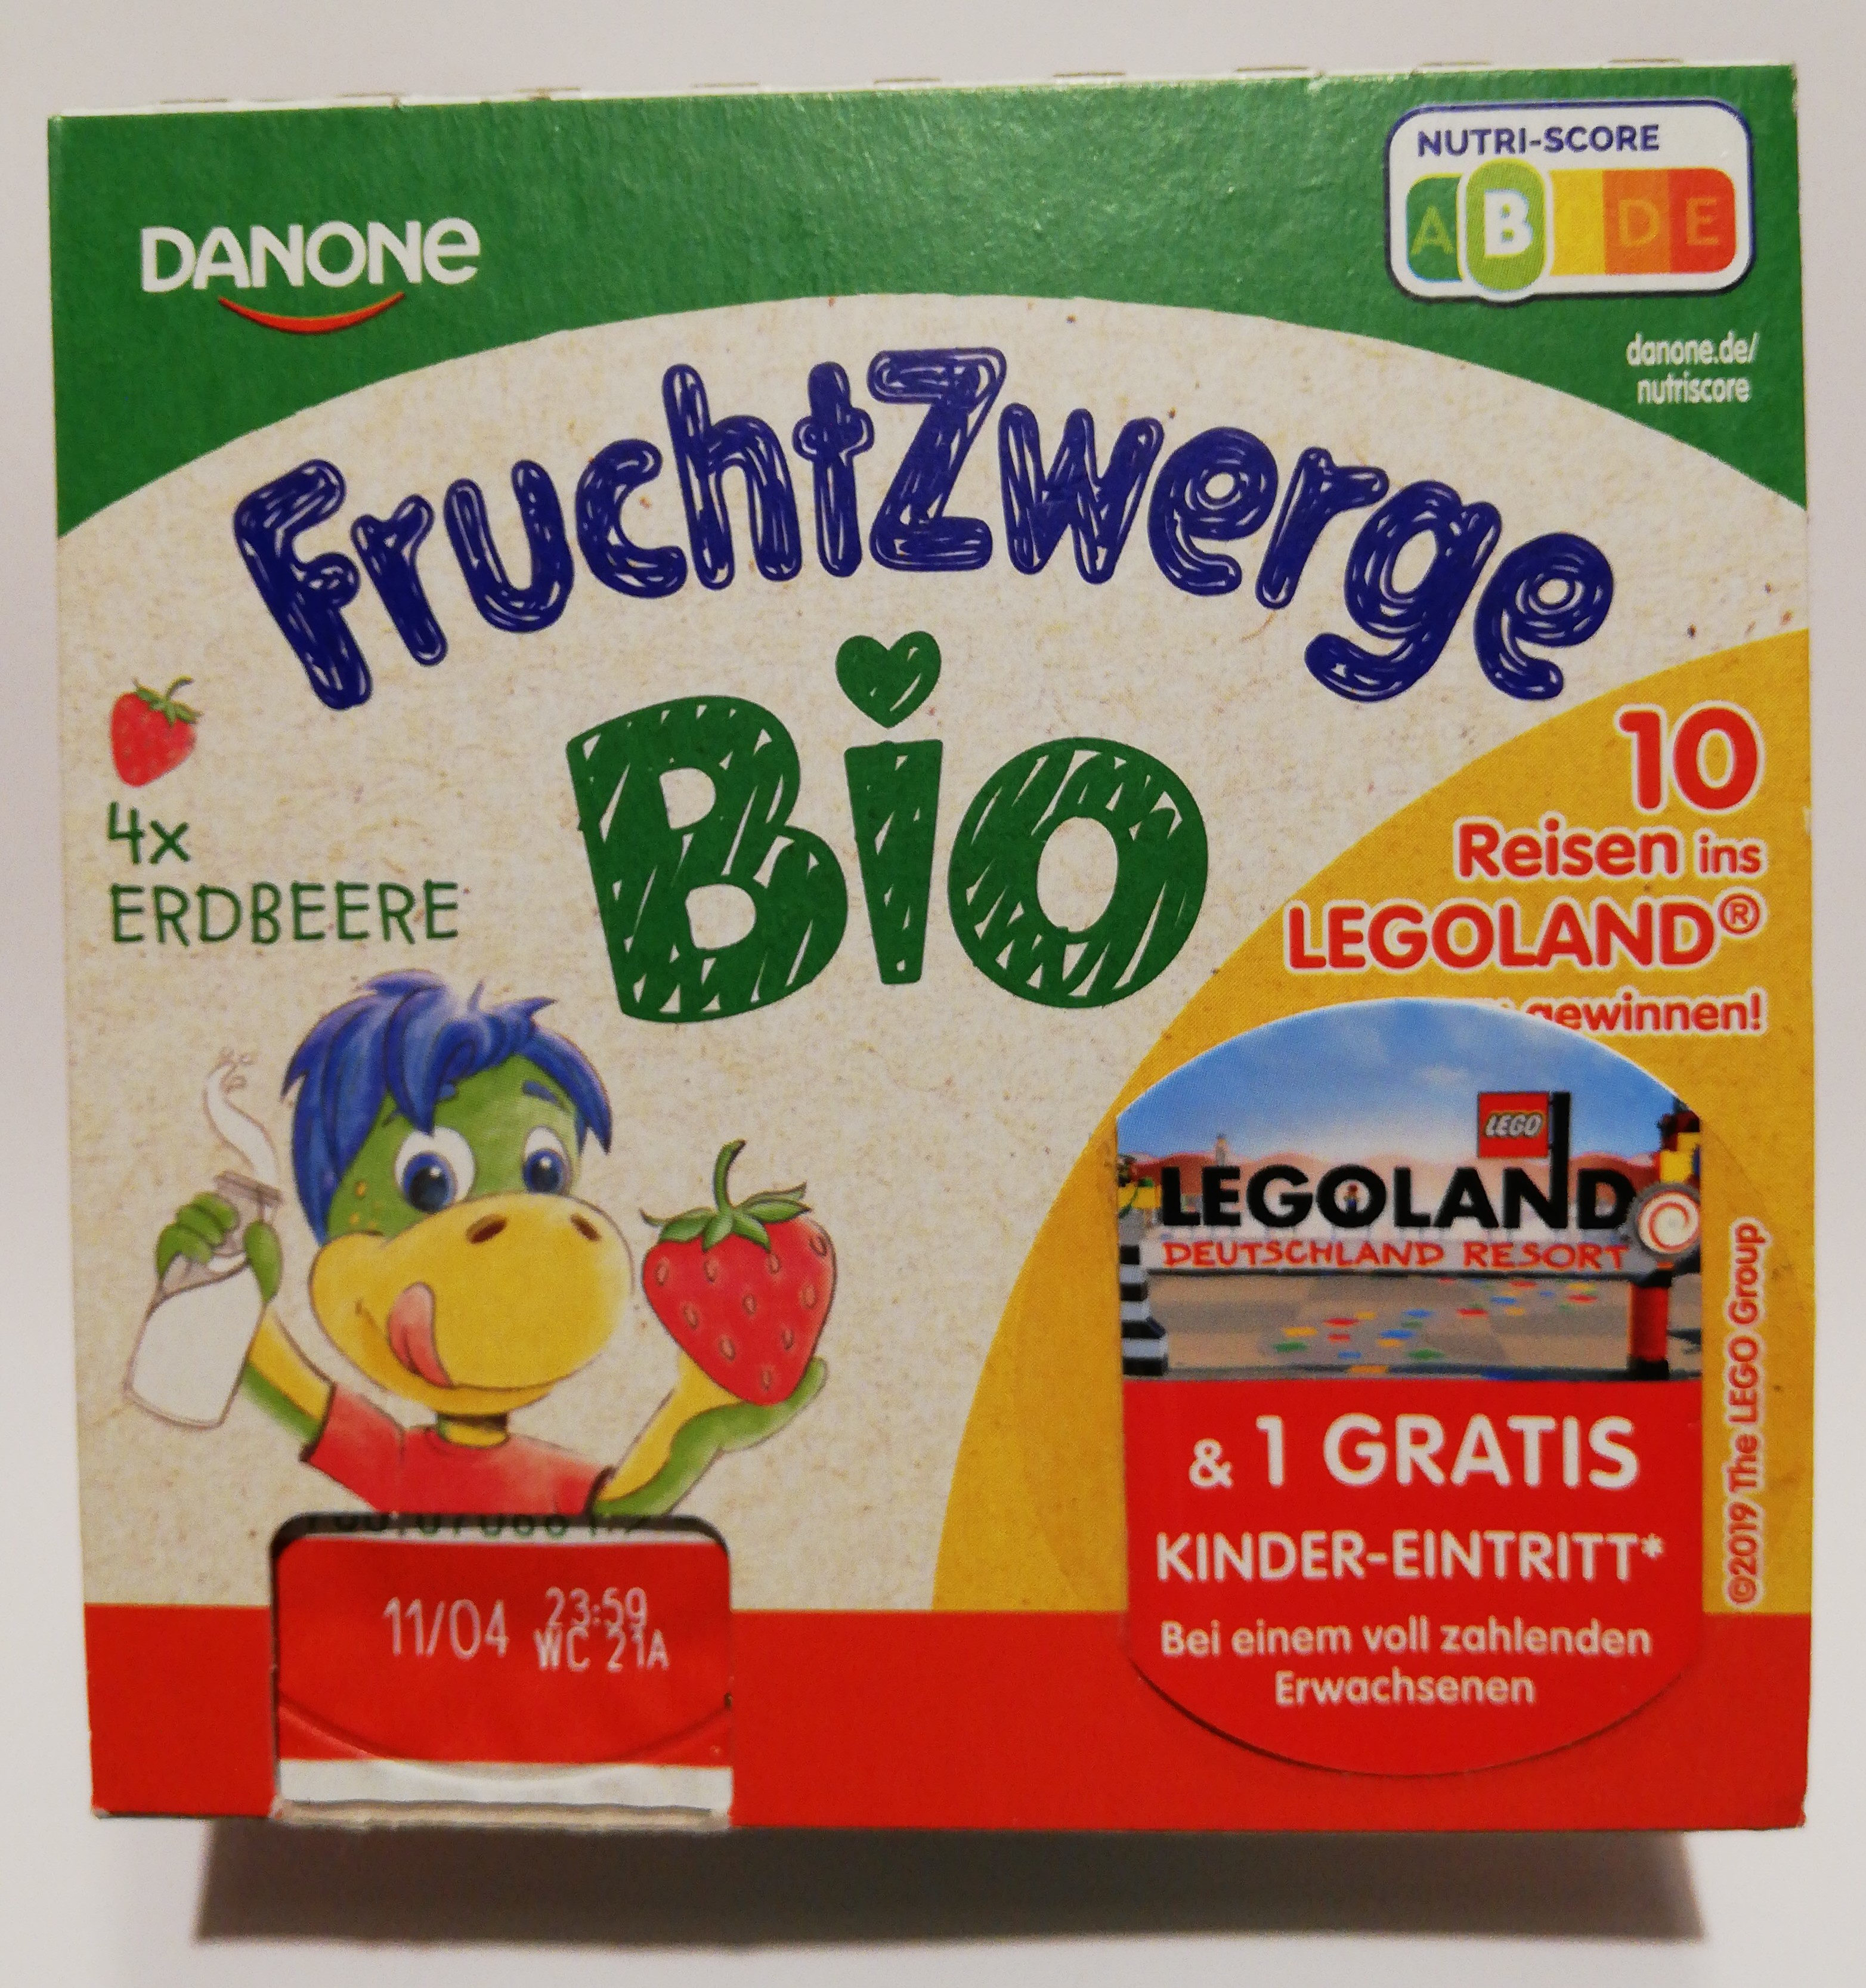 Fruchtzwerge bio - Produkt